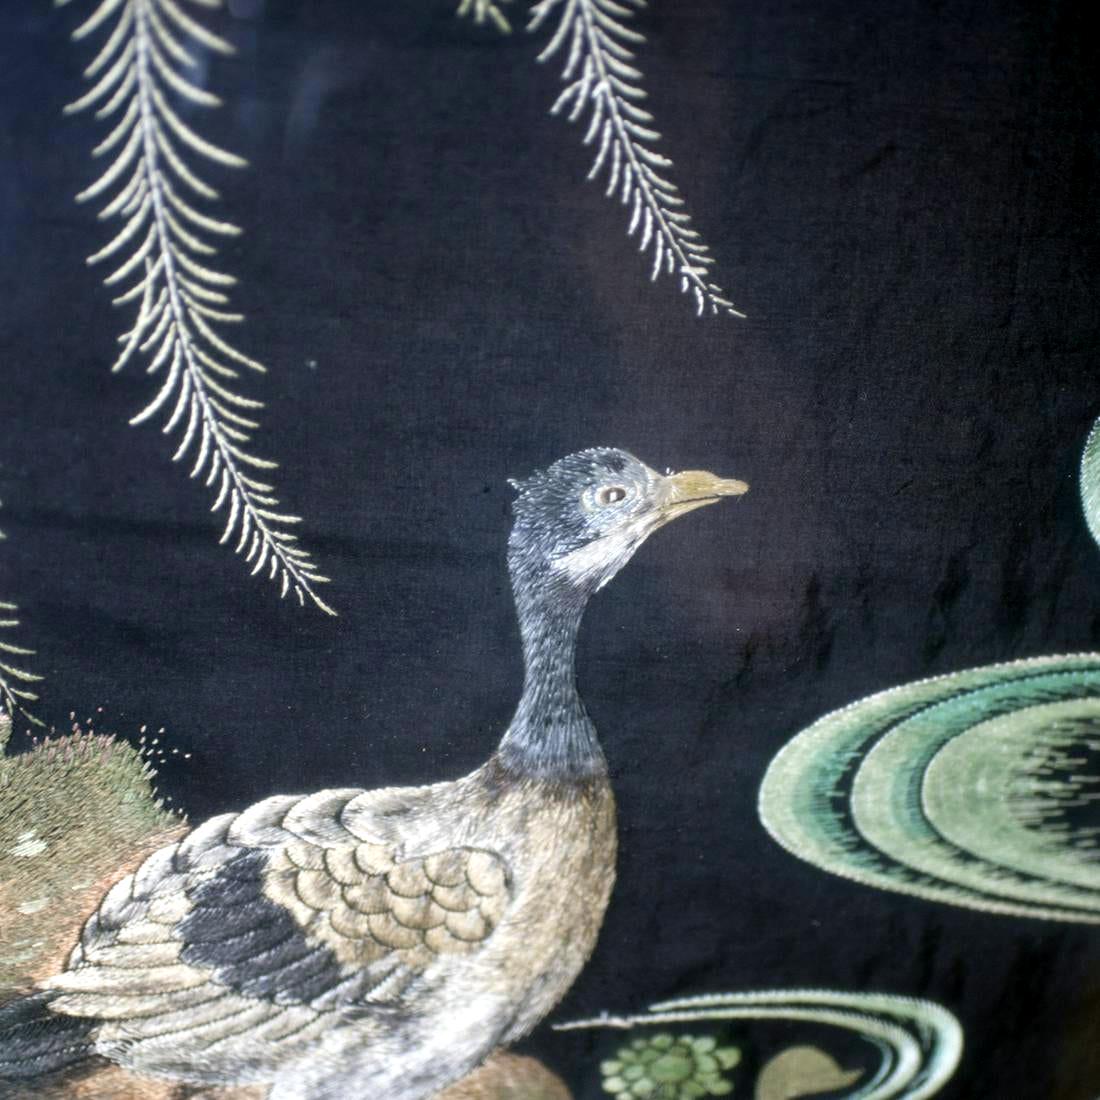 Une exquise pièce de broderie japonaise datant de la fin du XIXe siècle et du début du XXe siècle de la période Meiji. Le panneau de soie représente un paysage aquatique idyllique, dans lequel trois canards mandarins nagent dans un étang sous un